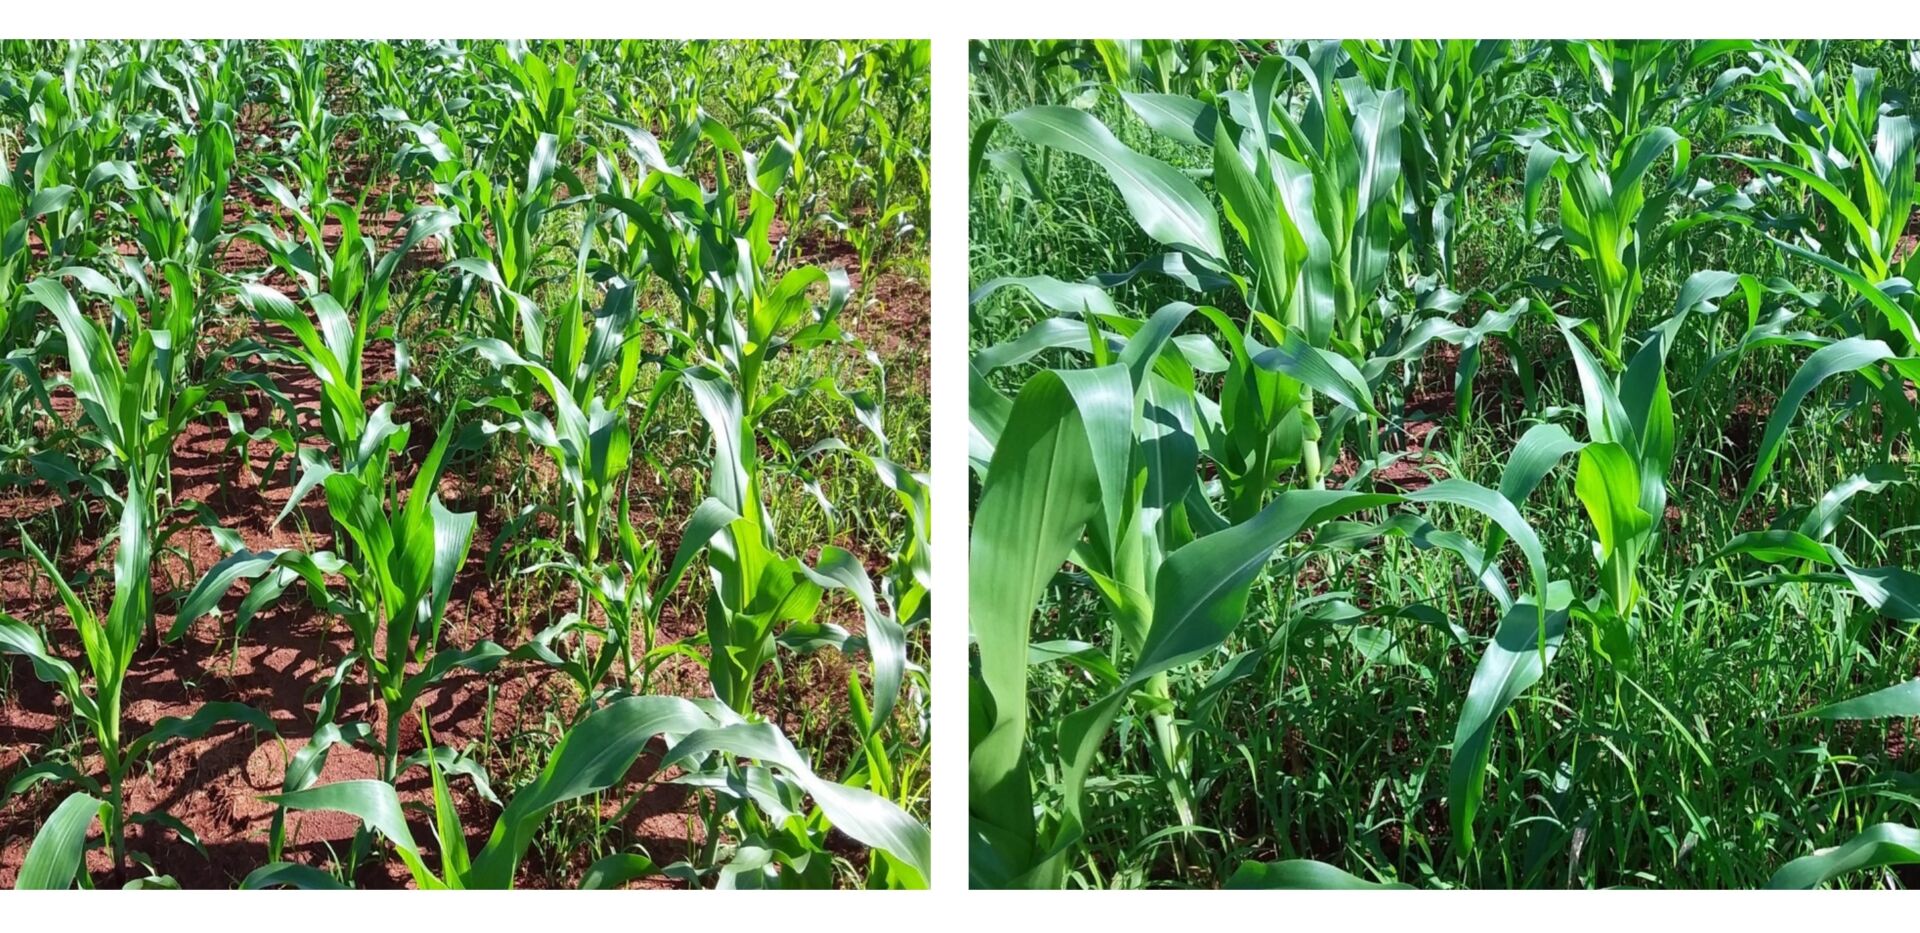 IHARA Defensivos Agrícolas no LinkedIn: #ihara #kyojin #soja #milho # herbicida #agronegócio #agricultura #campo